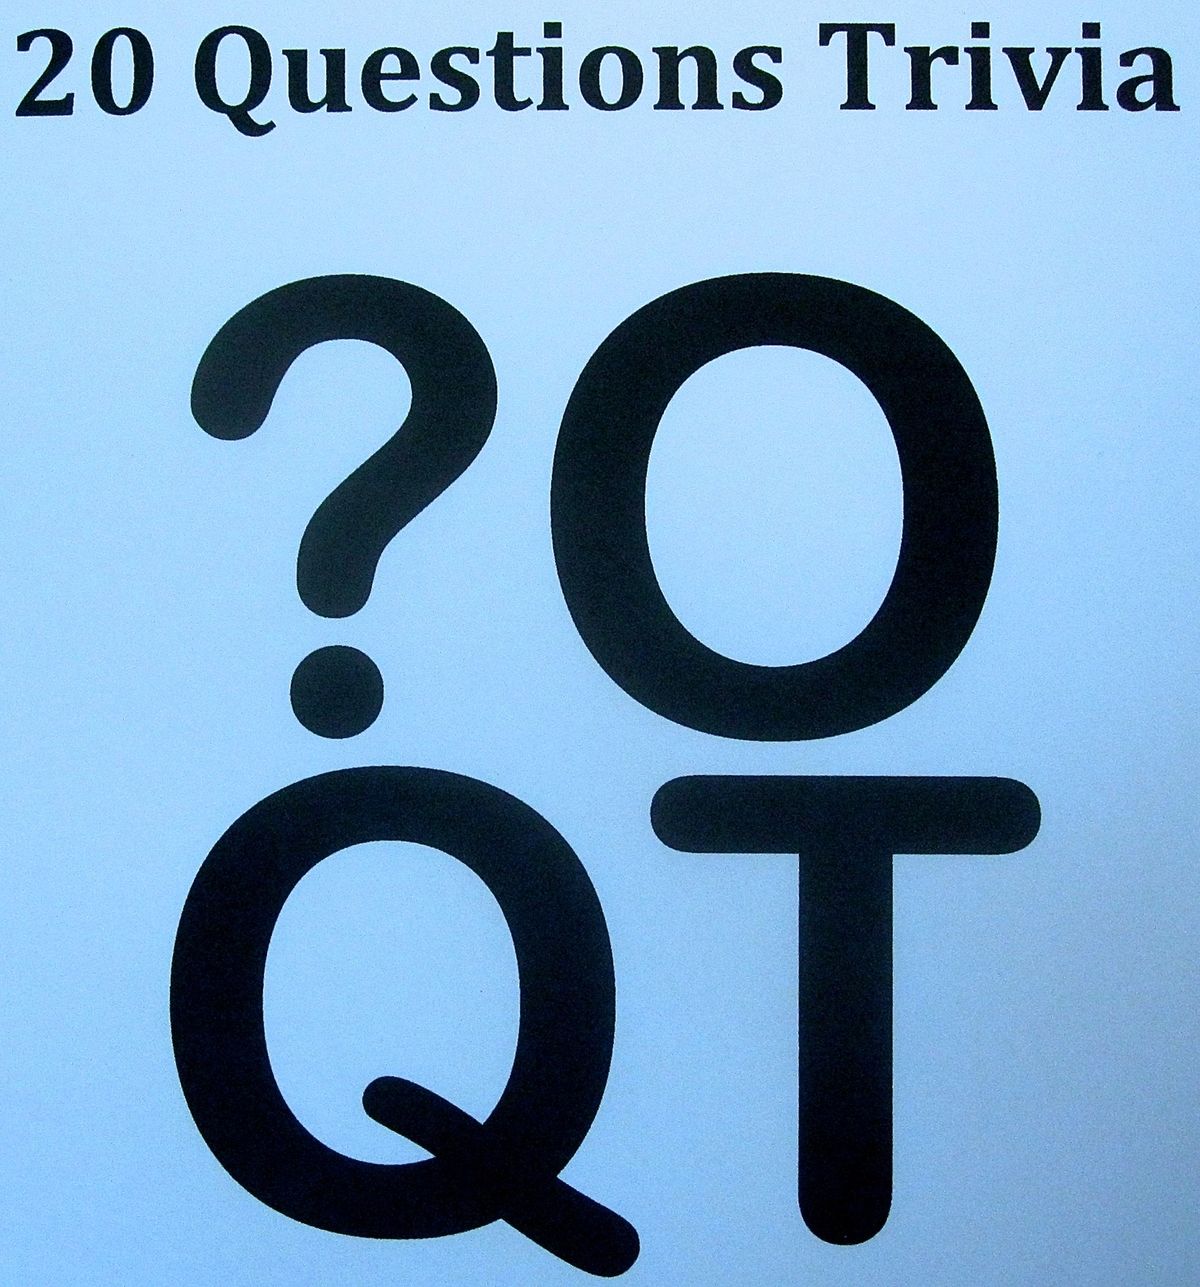 20 Questions Trivia MONDAYS